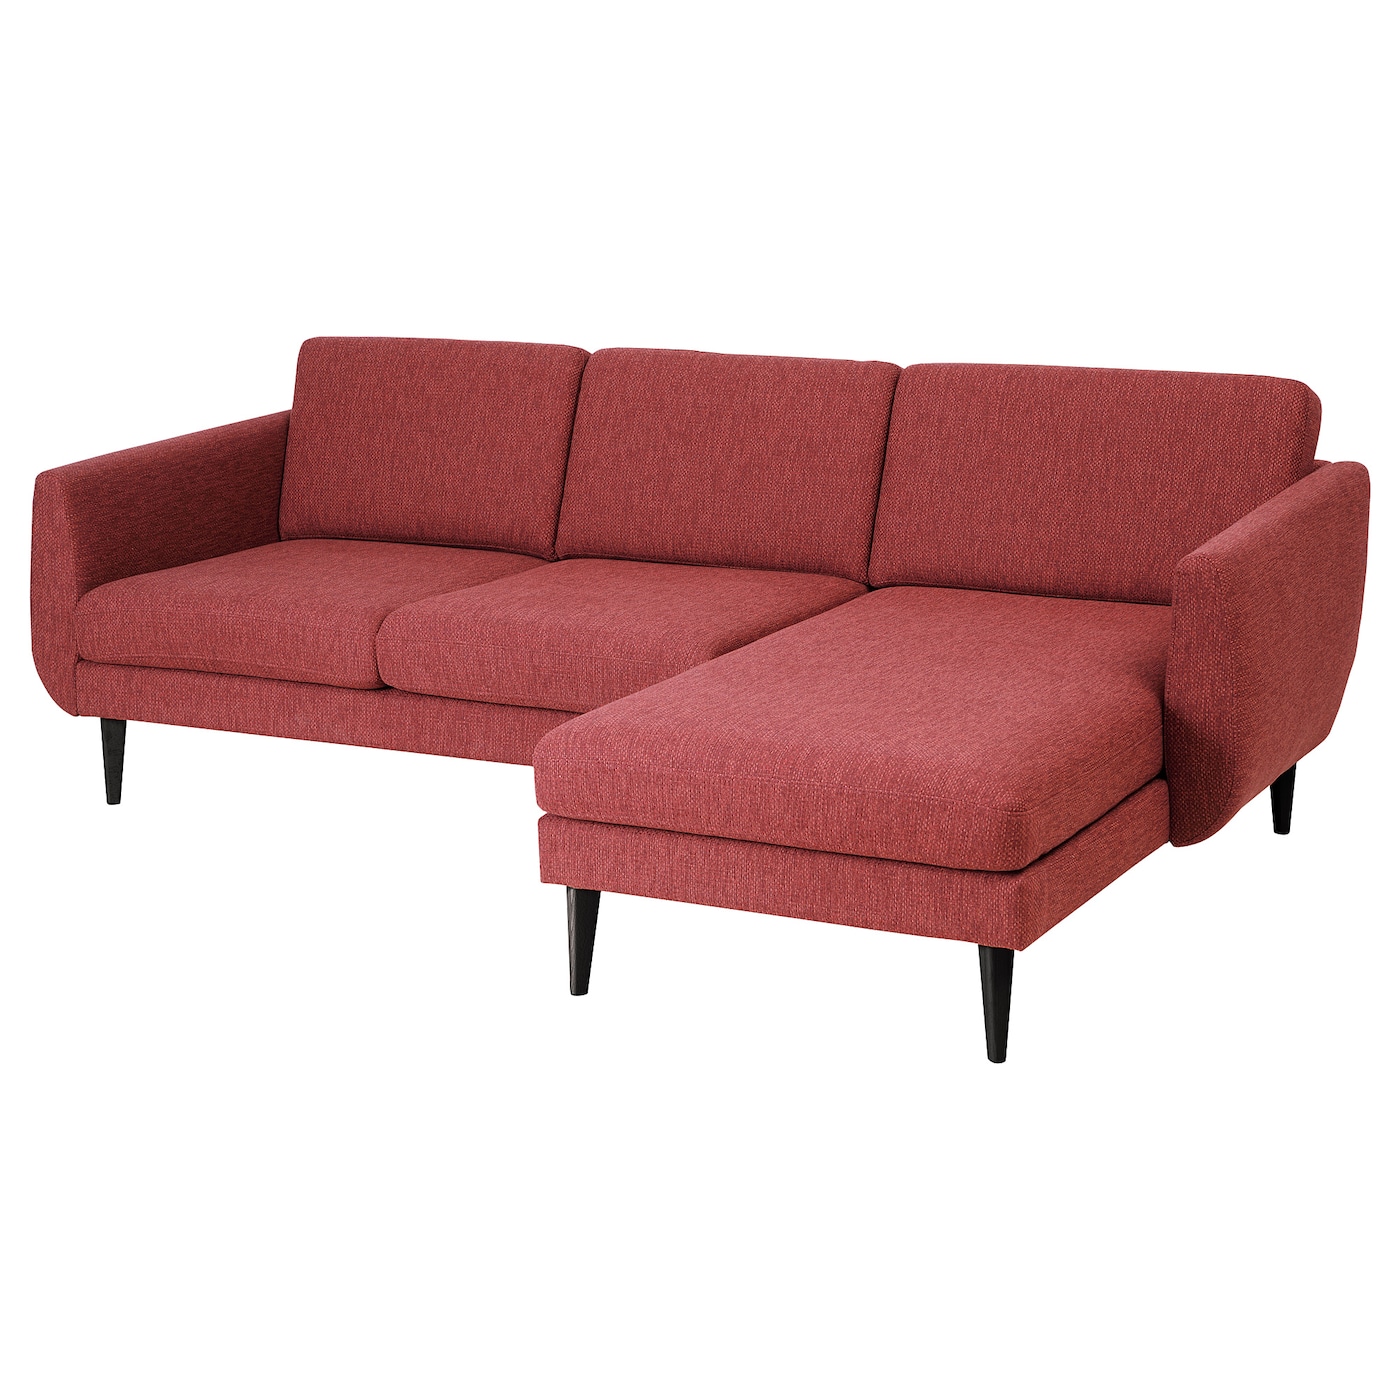 СМЕДСТОРП 3-местный диван + диван, Лейде красный/коричневый/черный SMEDSTORP IKEA диван из тика с подушками